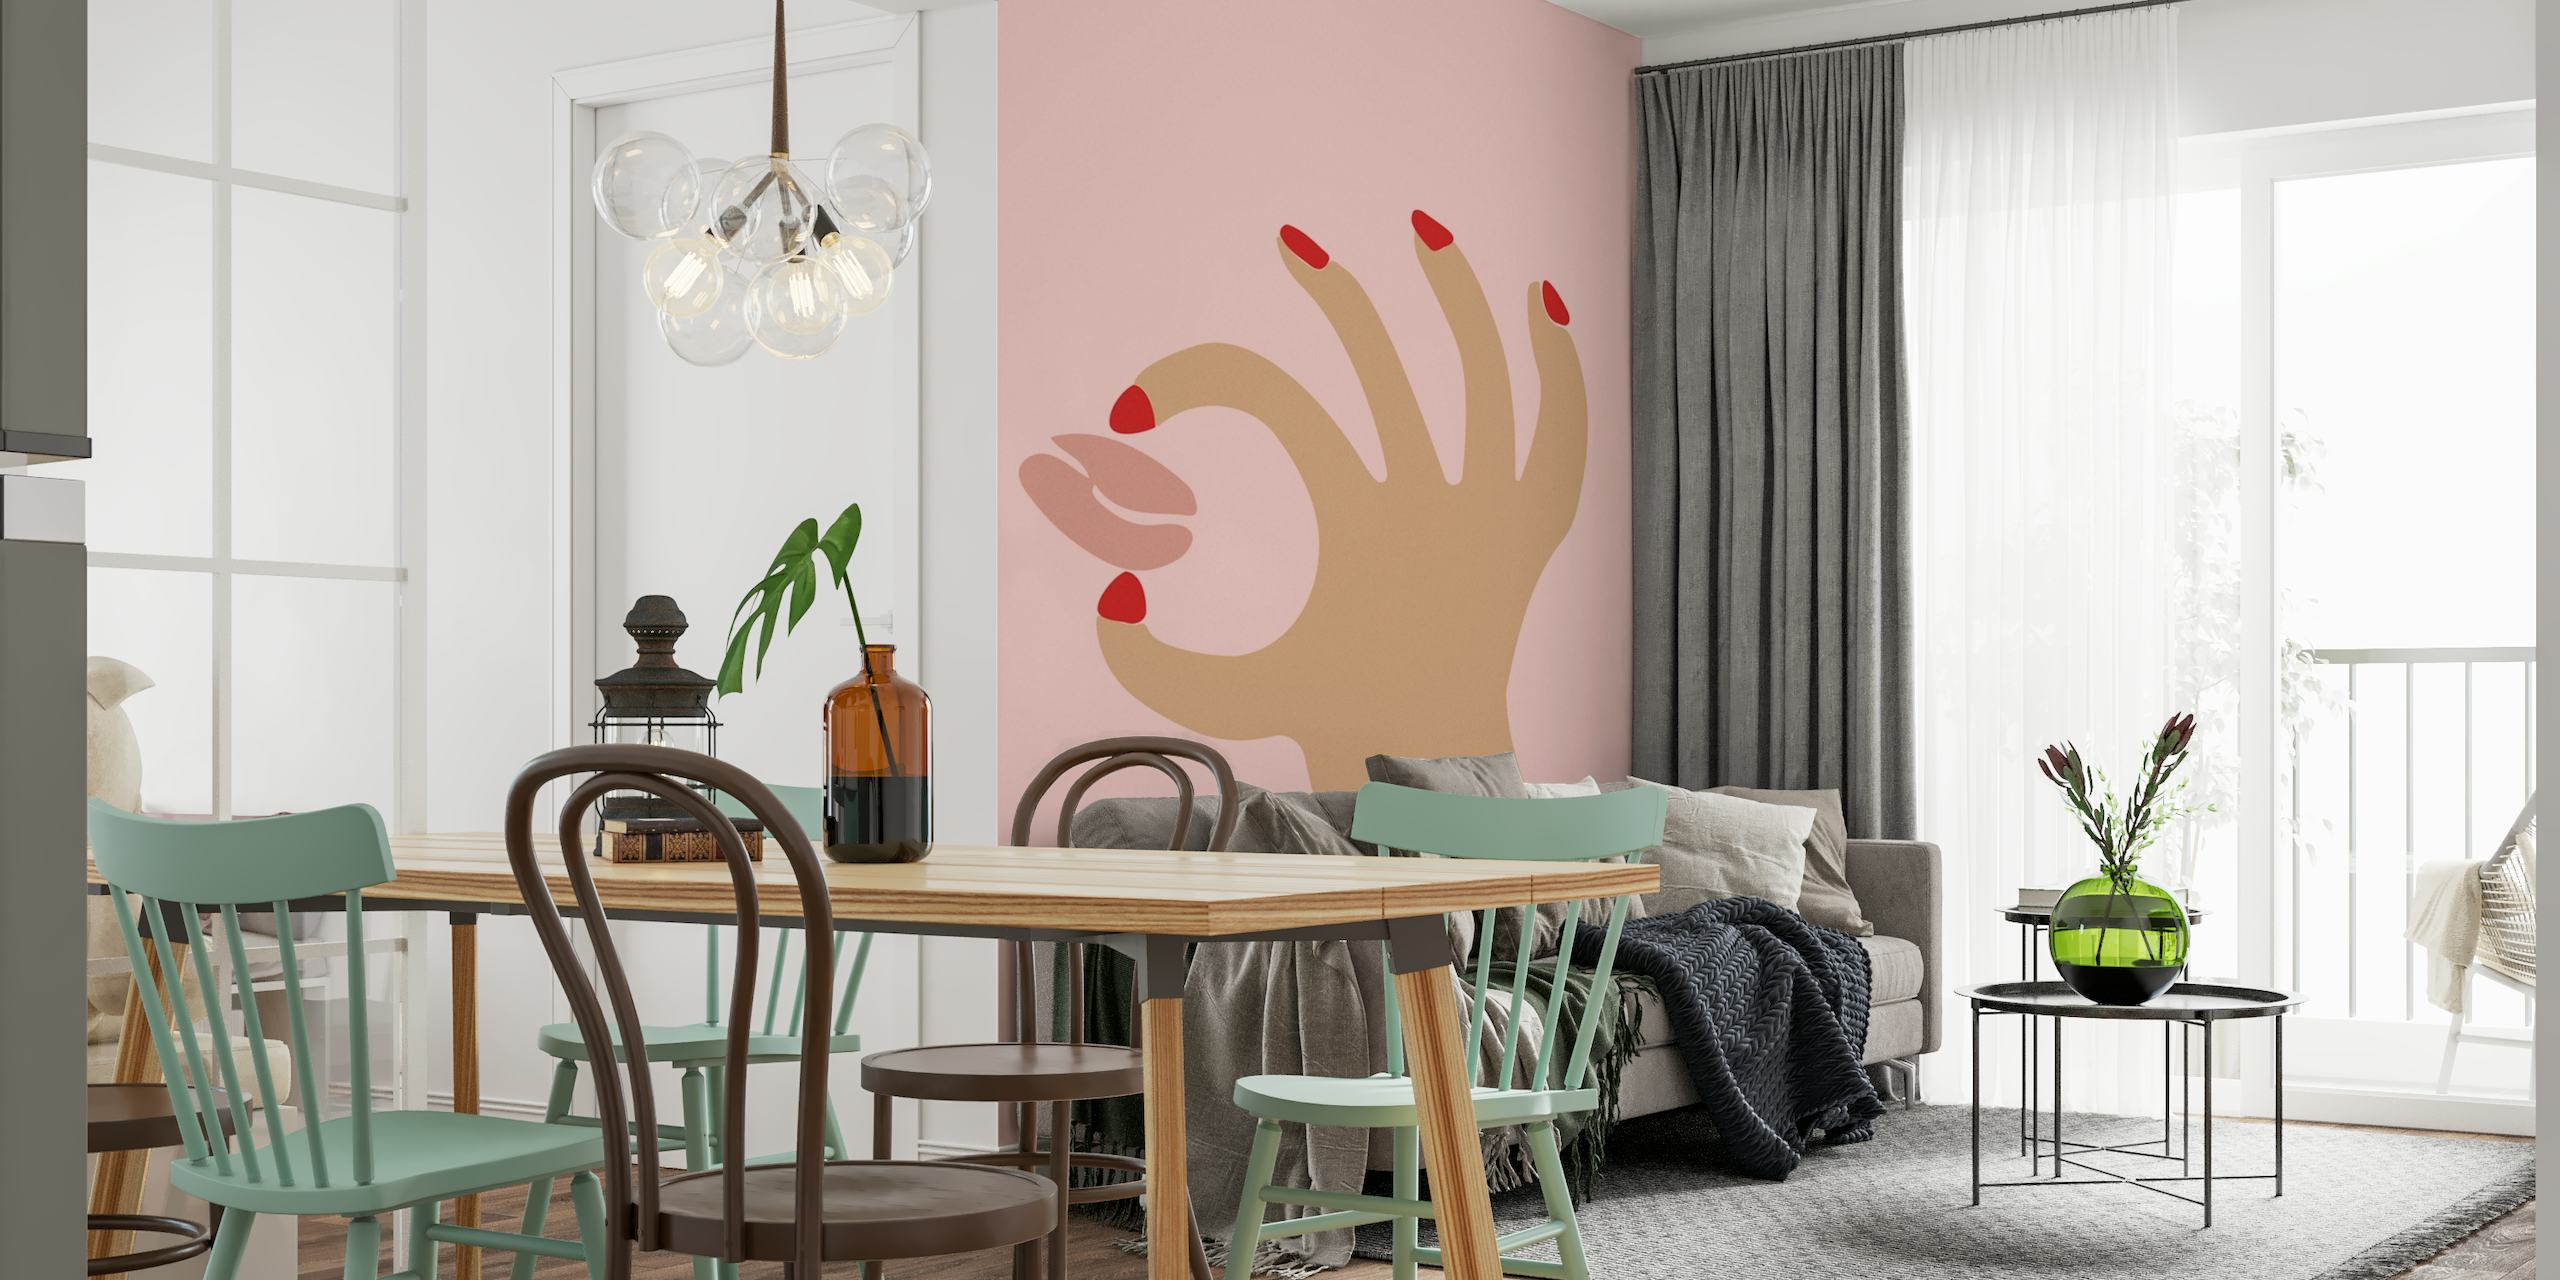 Coffee hands wallpaper